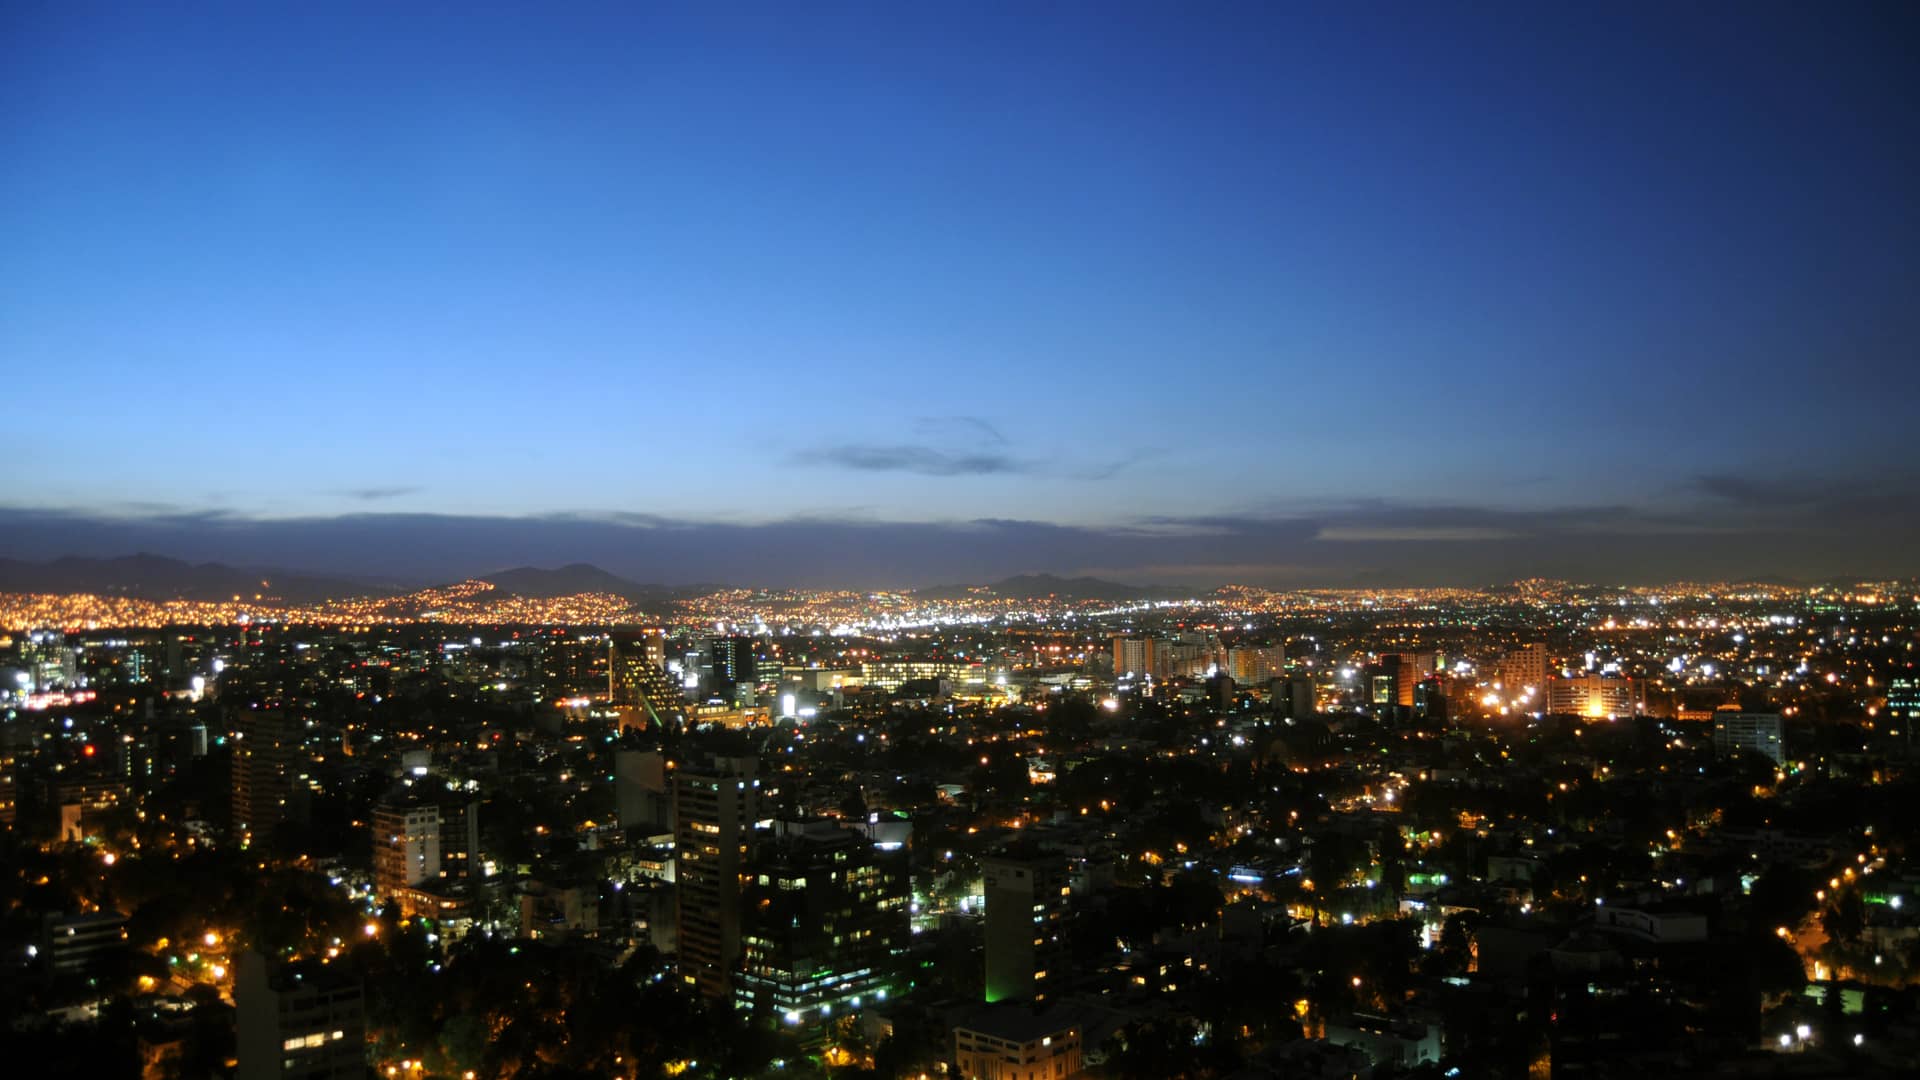 Vista aerea noctura de la ciudad de Polanco para representar las sucursales de telcel en esa localidad